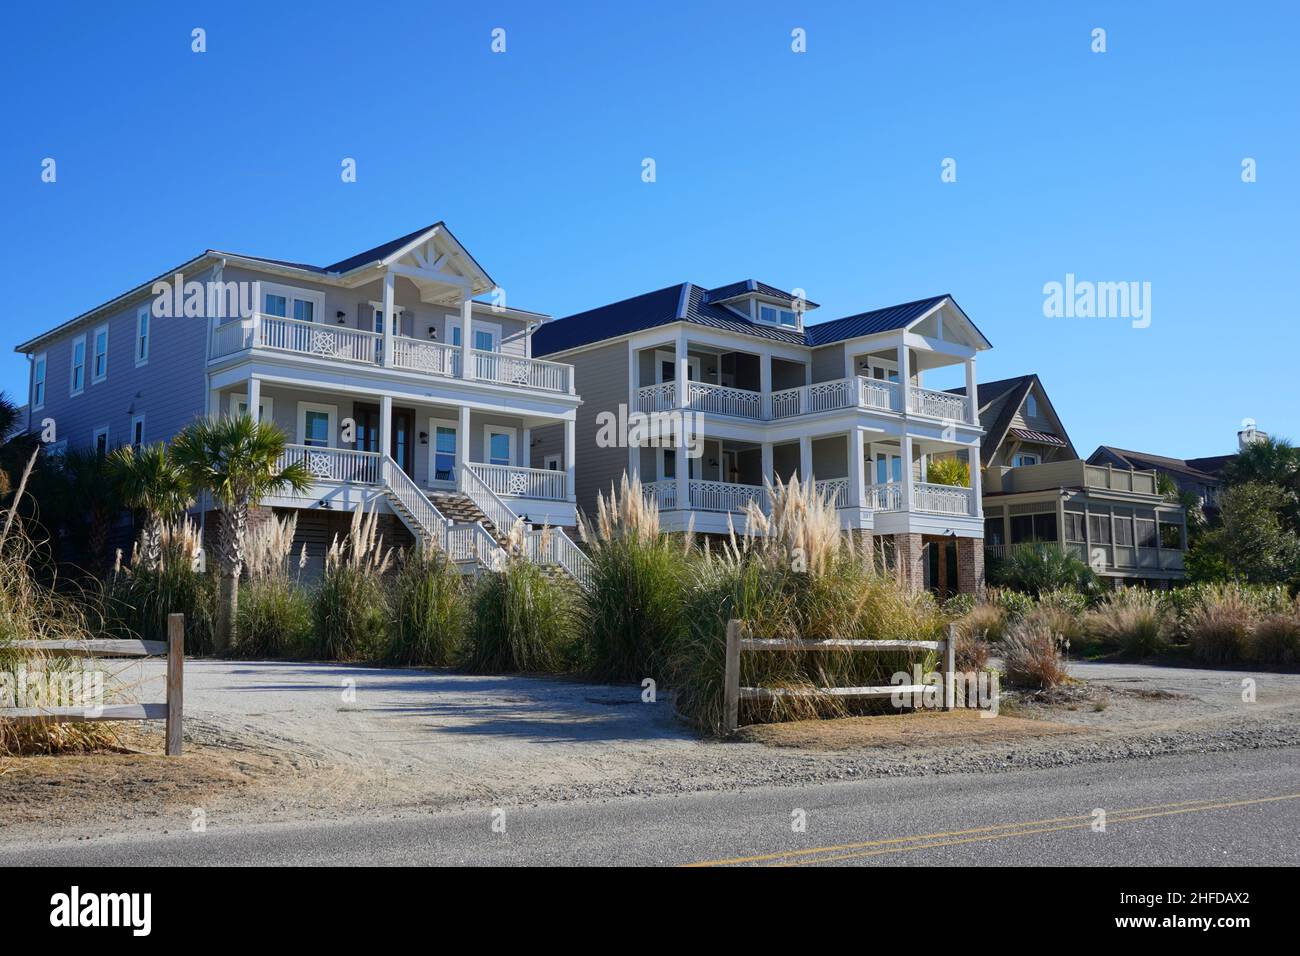 StreetView de una hilera de modernas casas de playa en la costa de Carolina del Sur Foto de stock